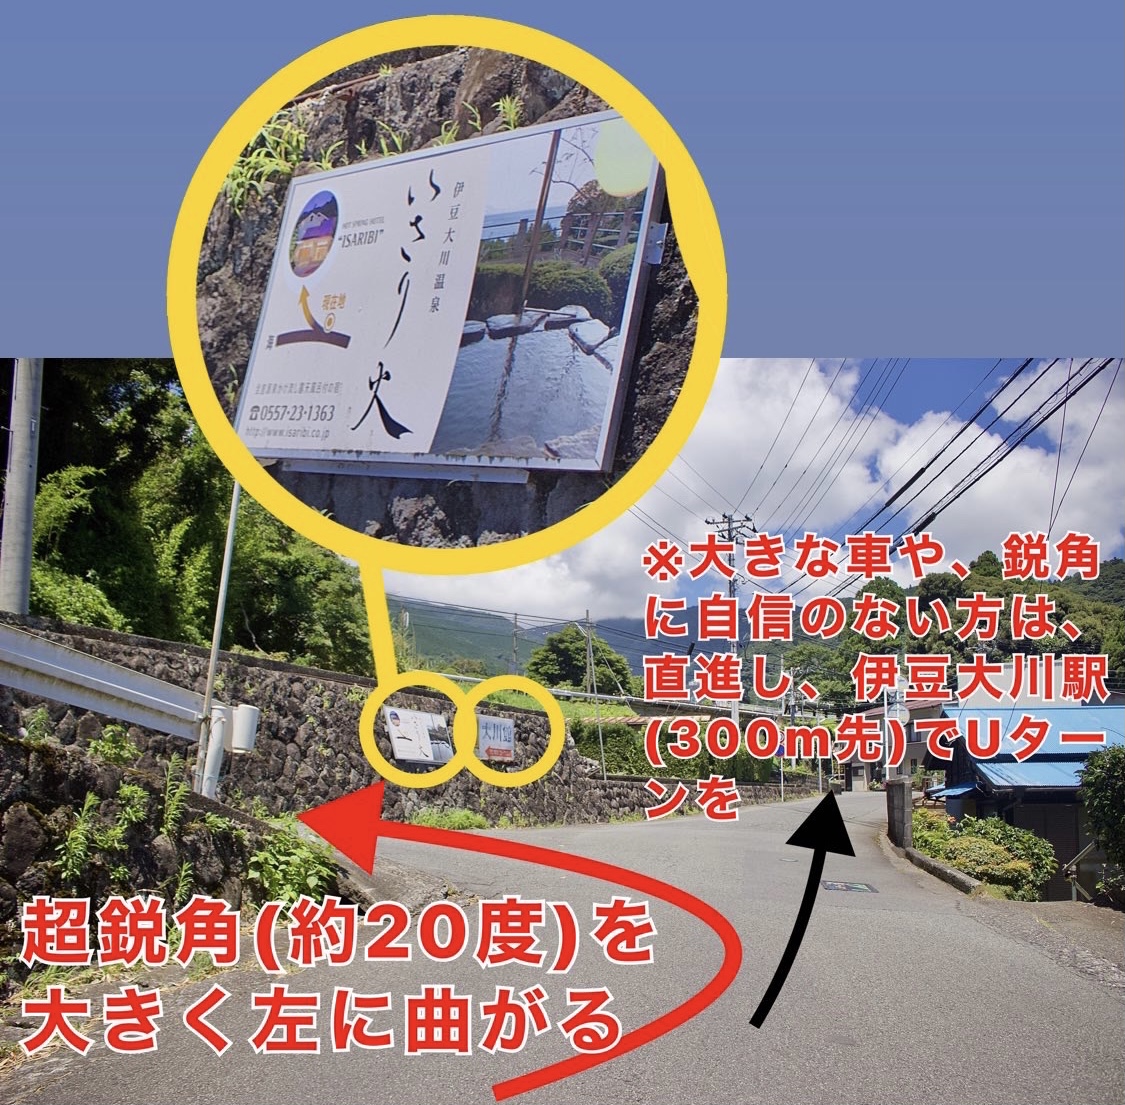 <strong>※ 超鋭角は高低差もあり、車を擦ることがありますので、直進し、伊豆大川駅付近でUターンされることをおすすめいたします。</strong></p>
<p><img src=